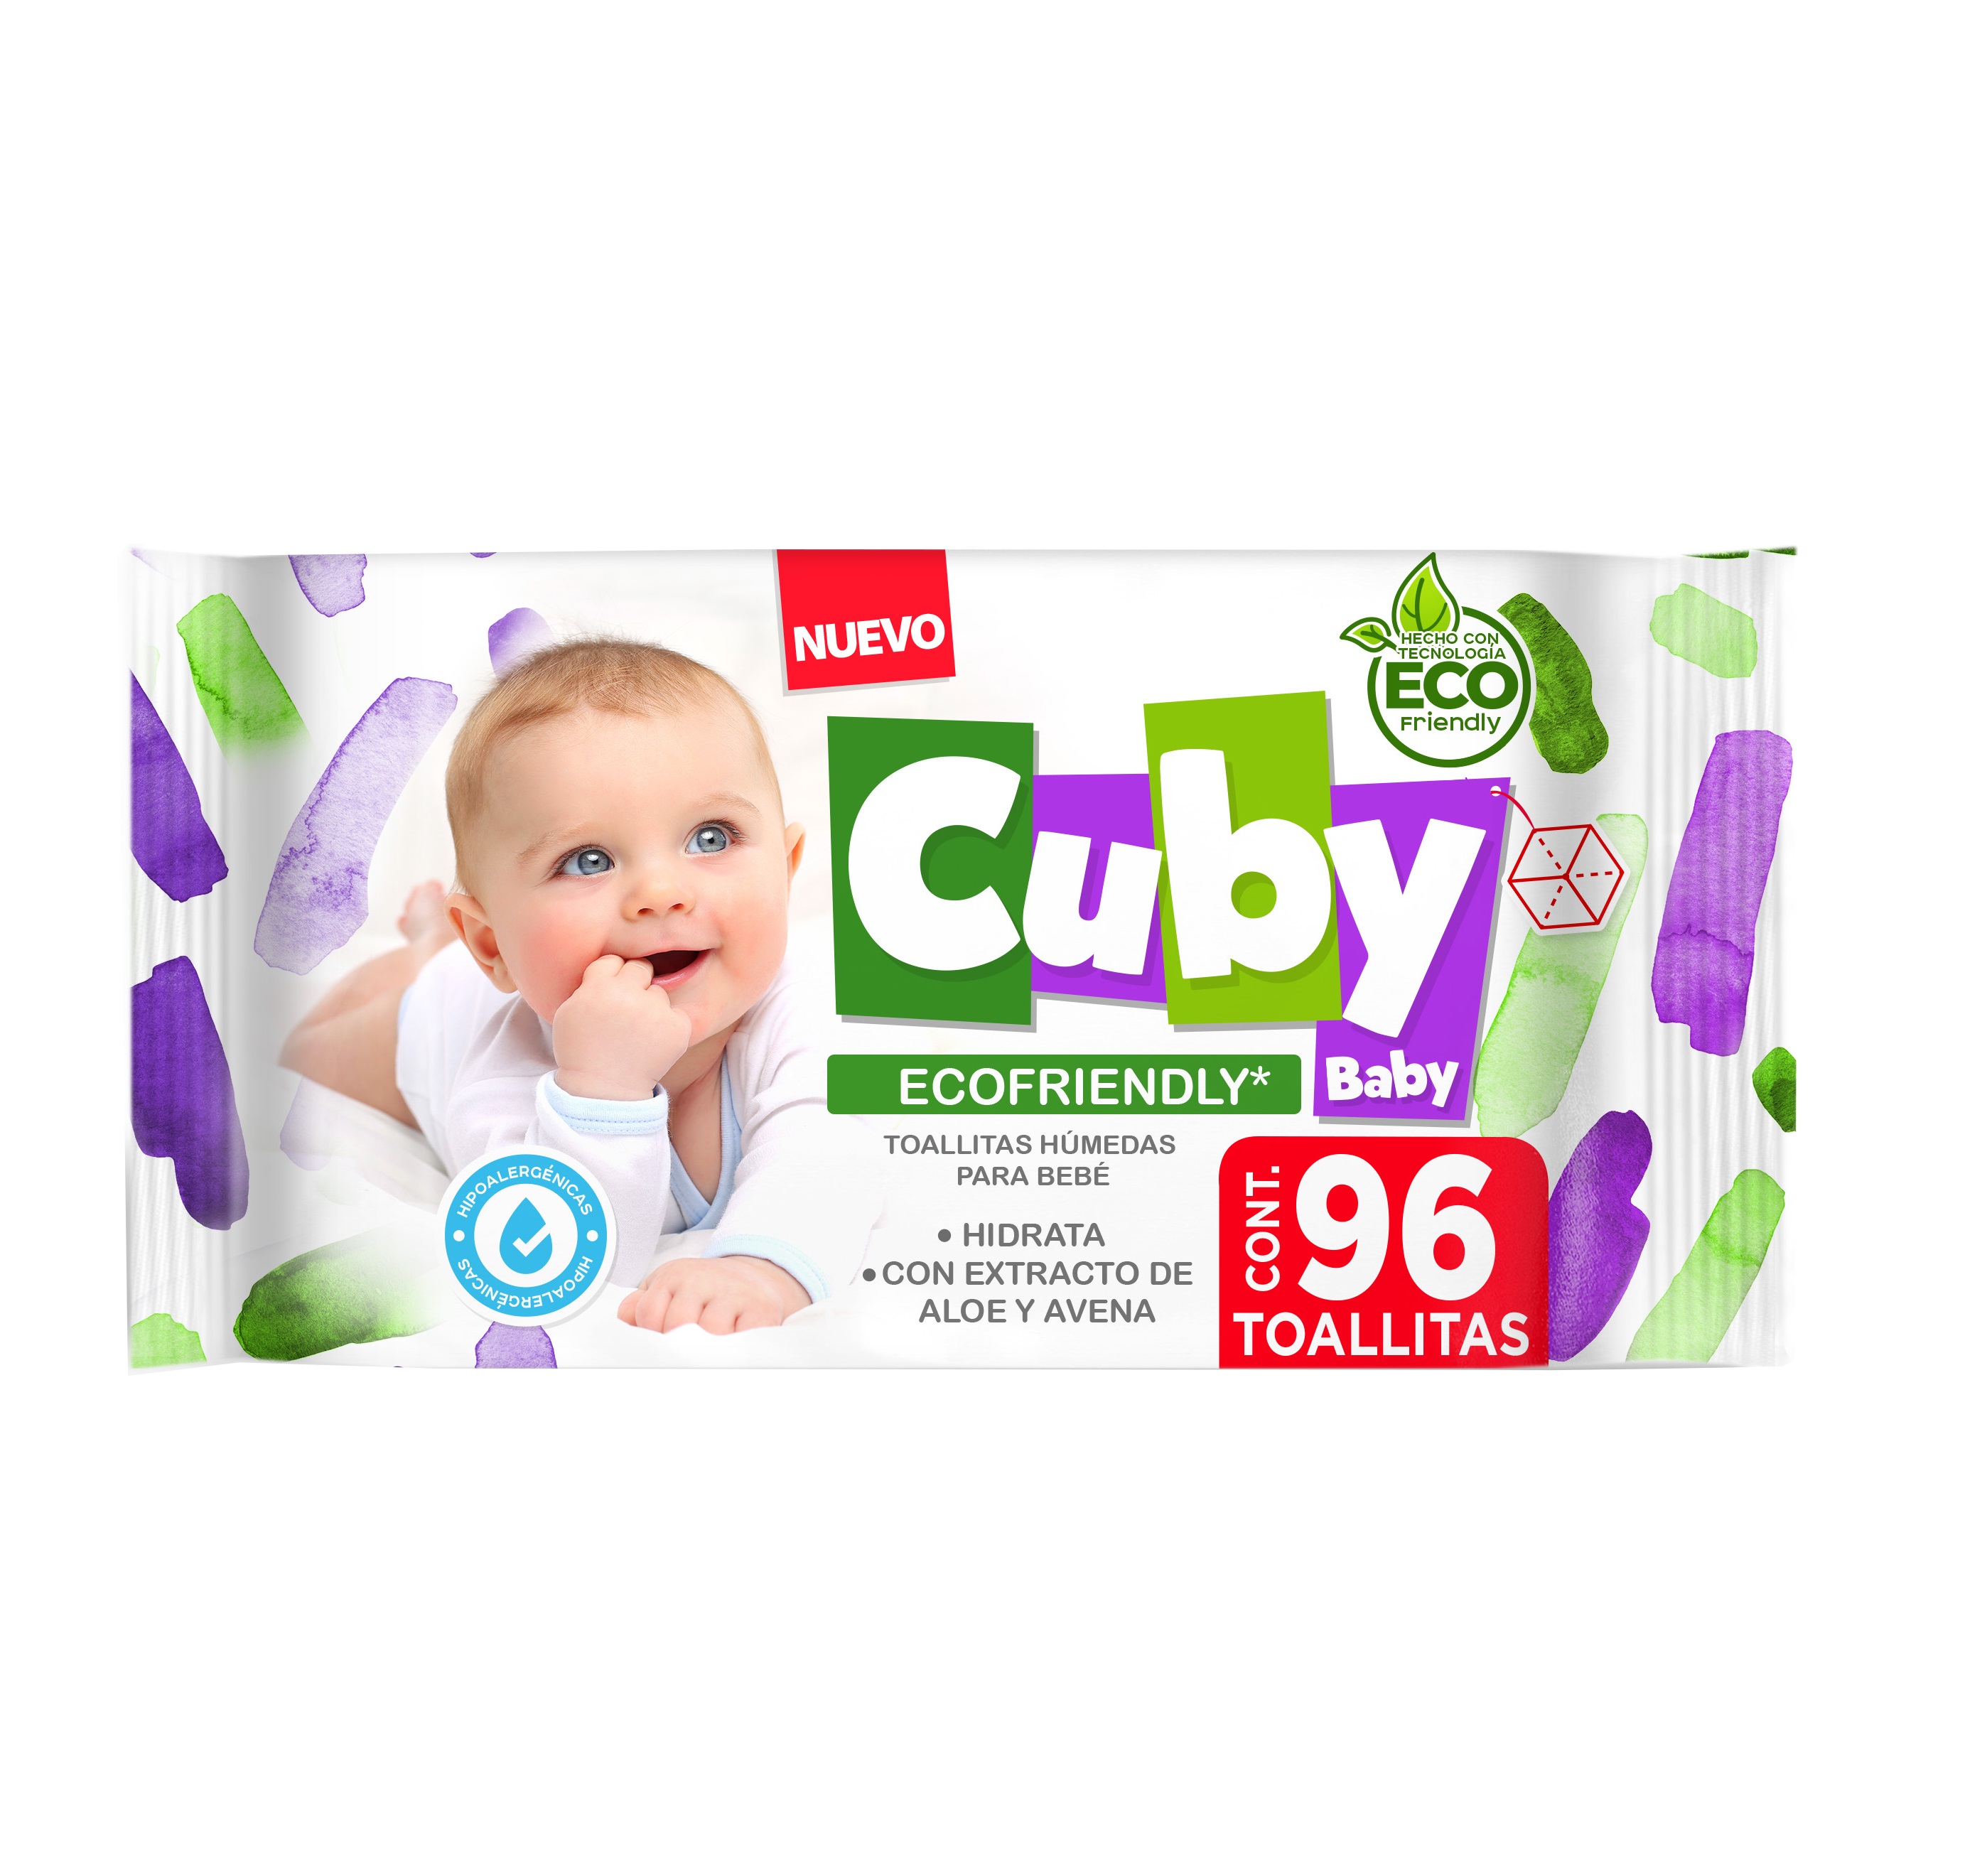 Cuby Baby Toallas Humedas Bebe 96 Pzas